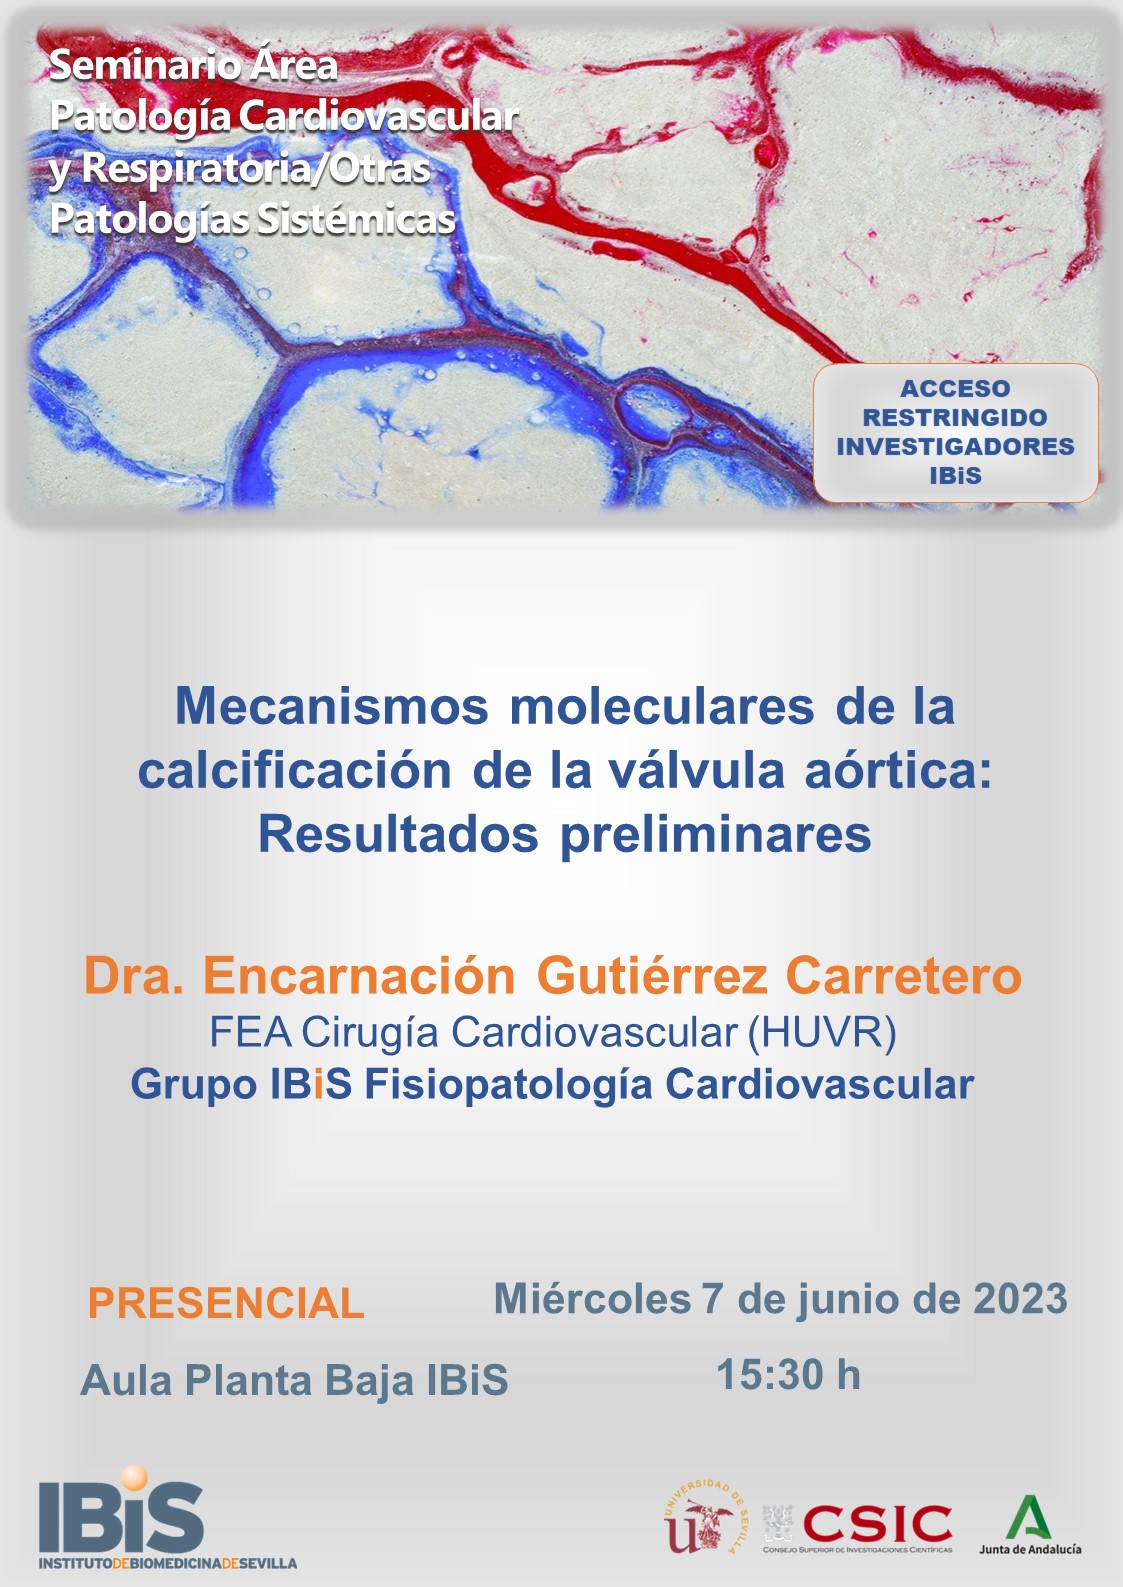 Poster: Mecanismos moleculares de la calcificación de la válvula aórtica: Resultados preliminares